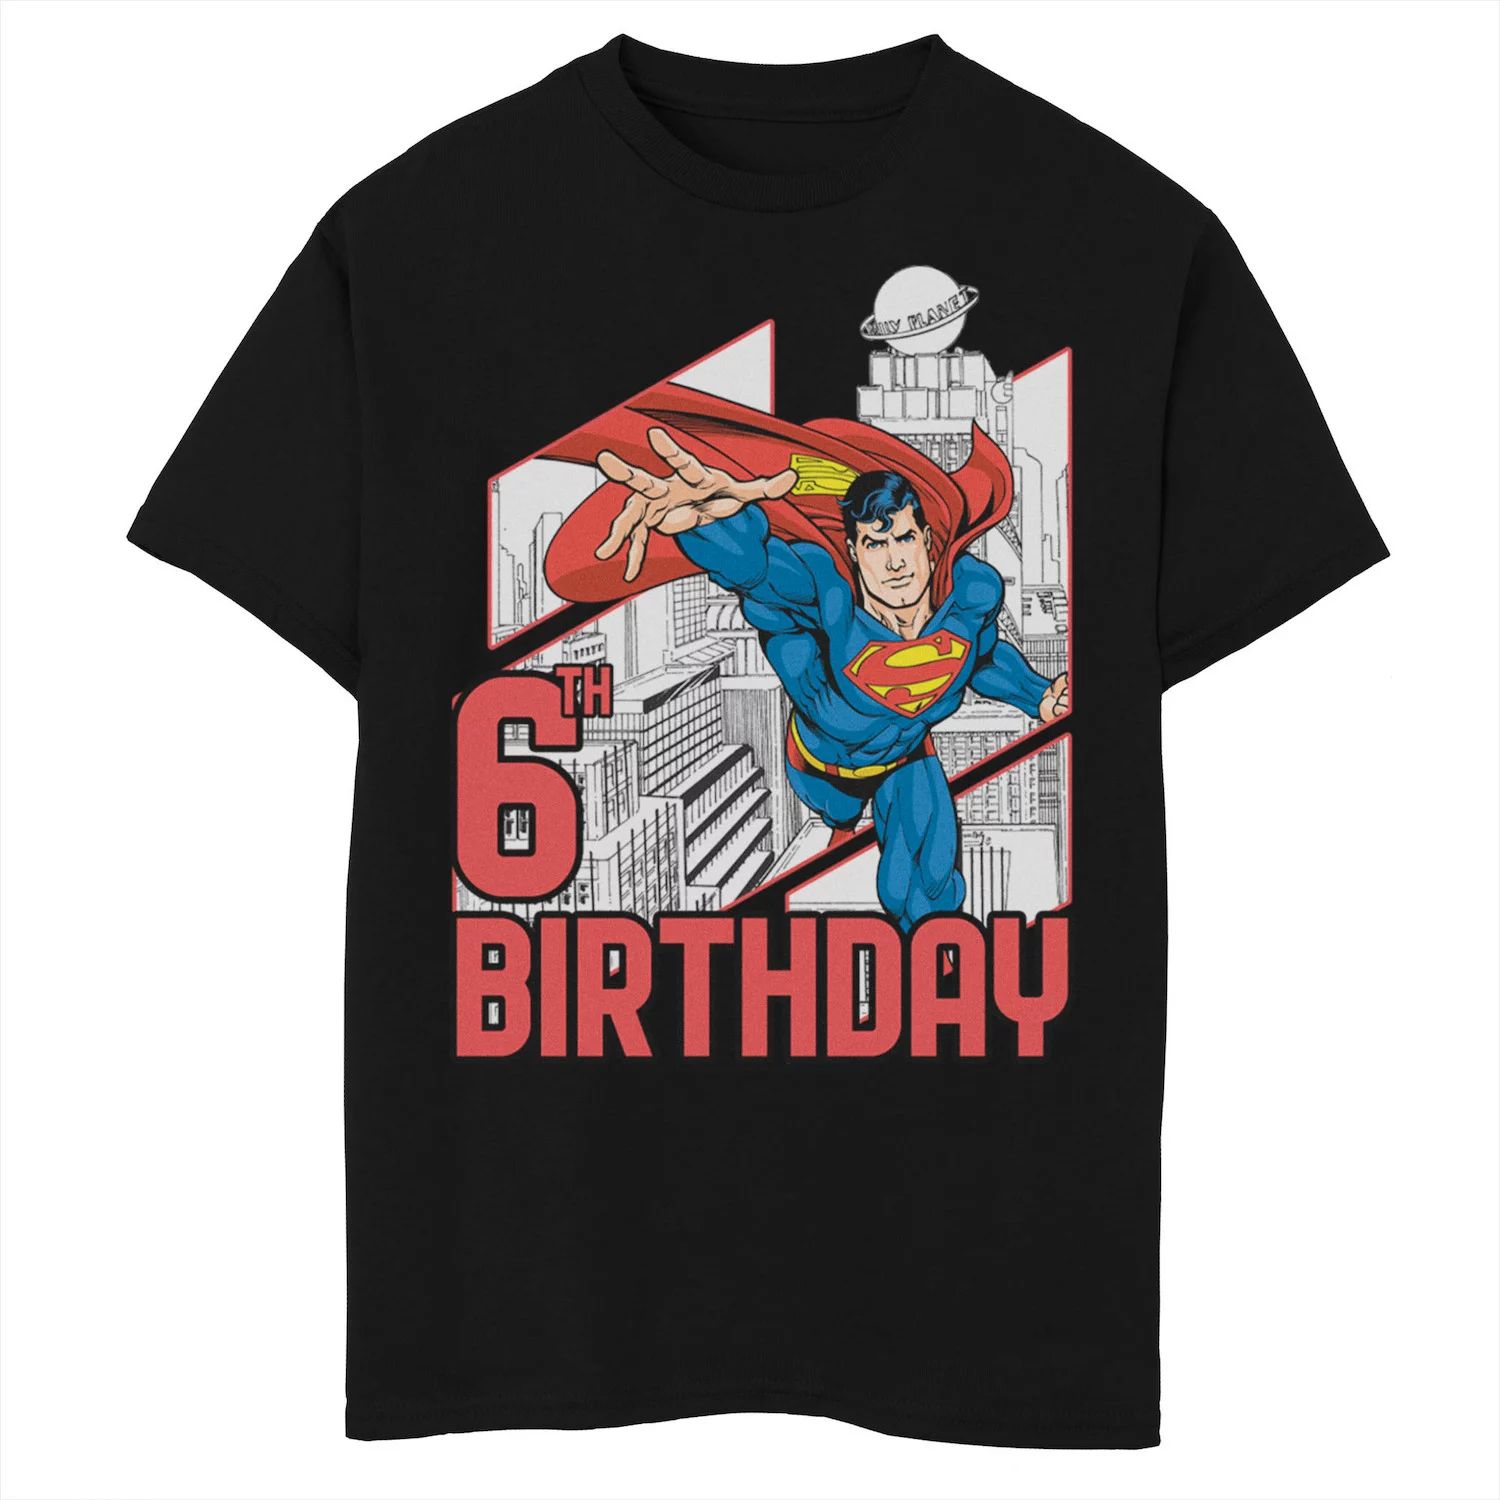 Футболка с рисунком Супермена на 6-й день рождения для мальчиков 8–20 лет из комиксов DC Comics Licensed Character, черный футболка на 6 й день рождения чудо женщина для мальчиков 8–20 лет из комиксов dc comics licensed character